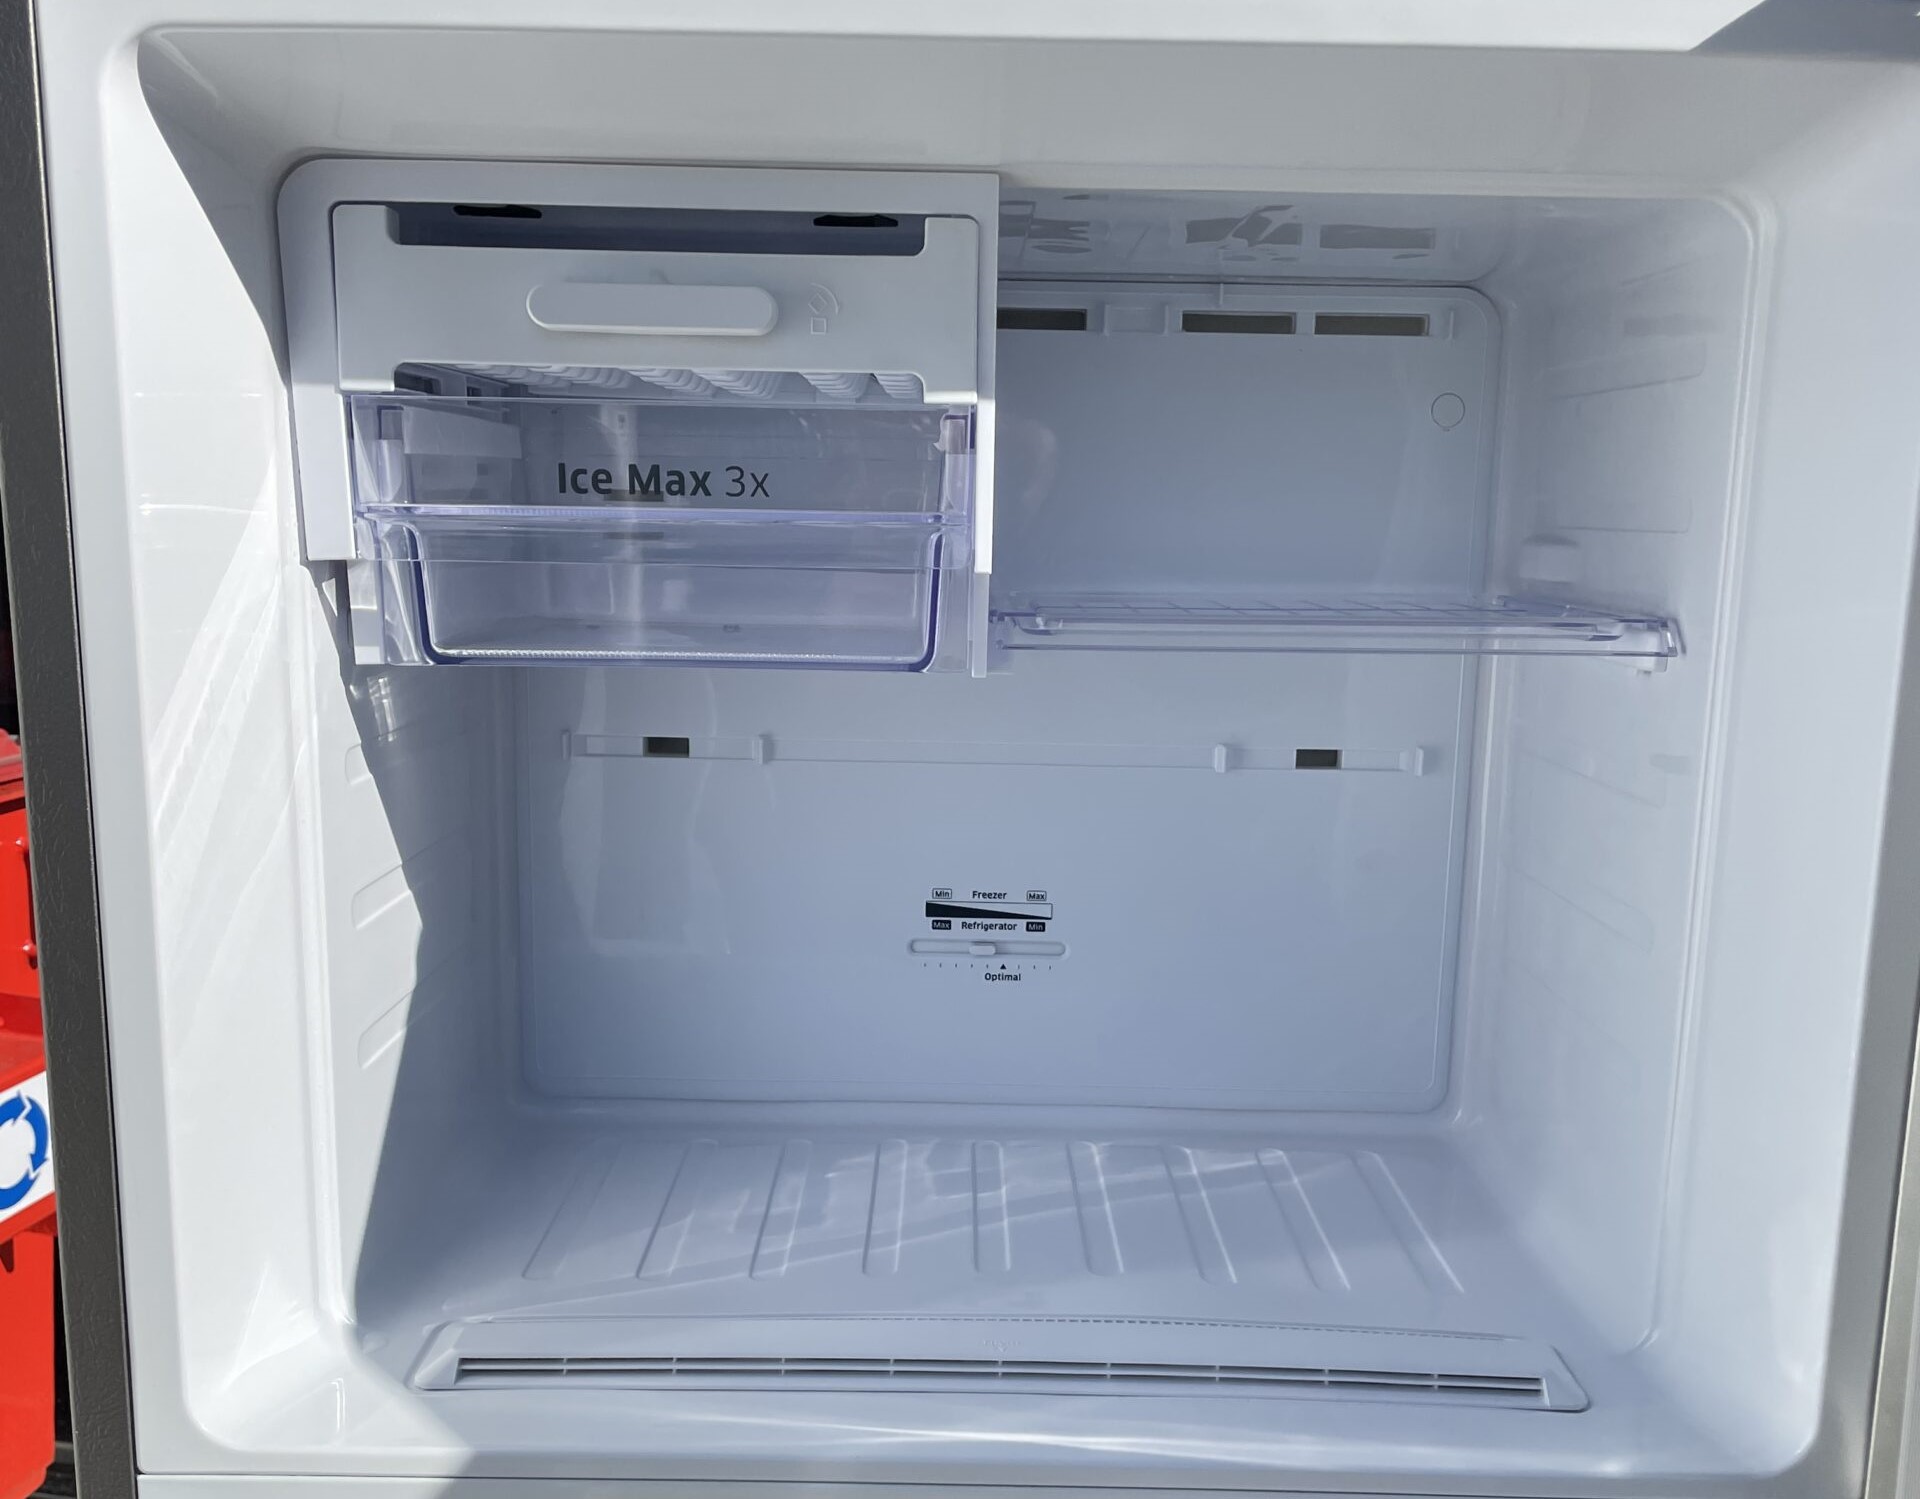 How To Fix The Error Code 15E Or 40E For Samsung Refrigerator